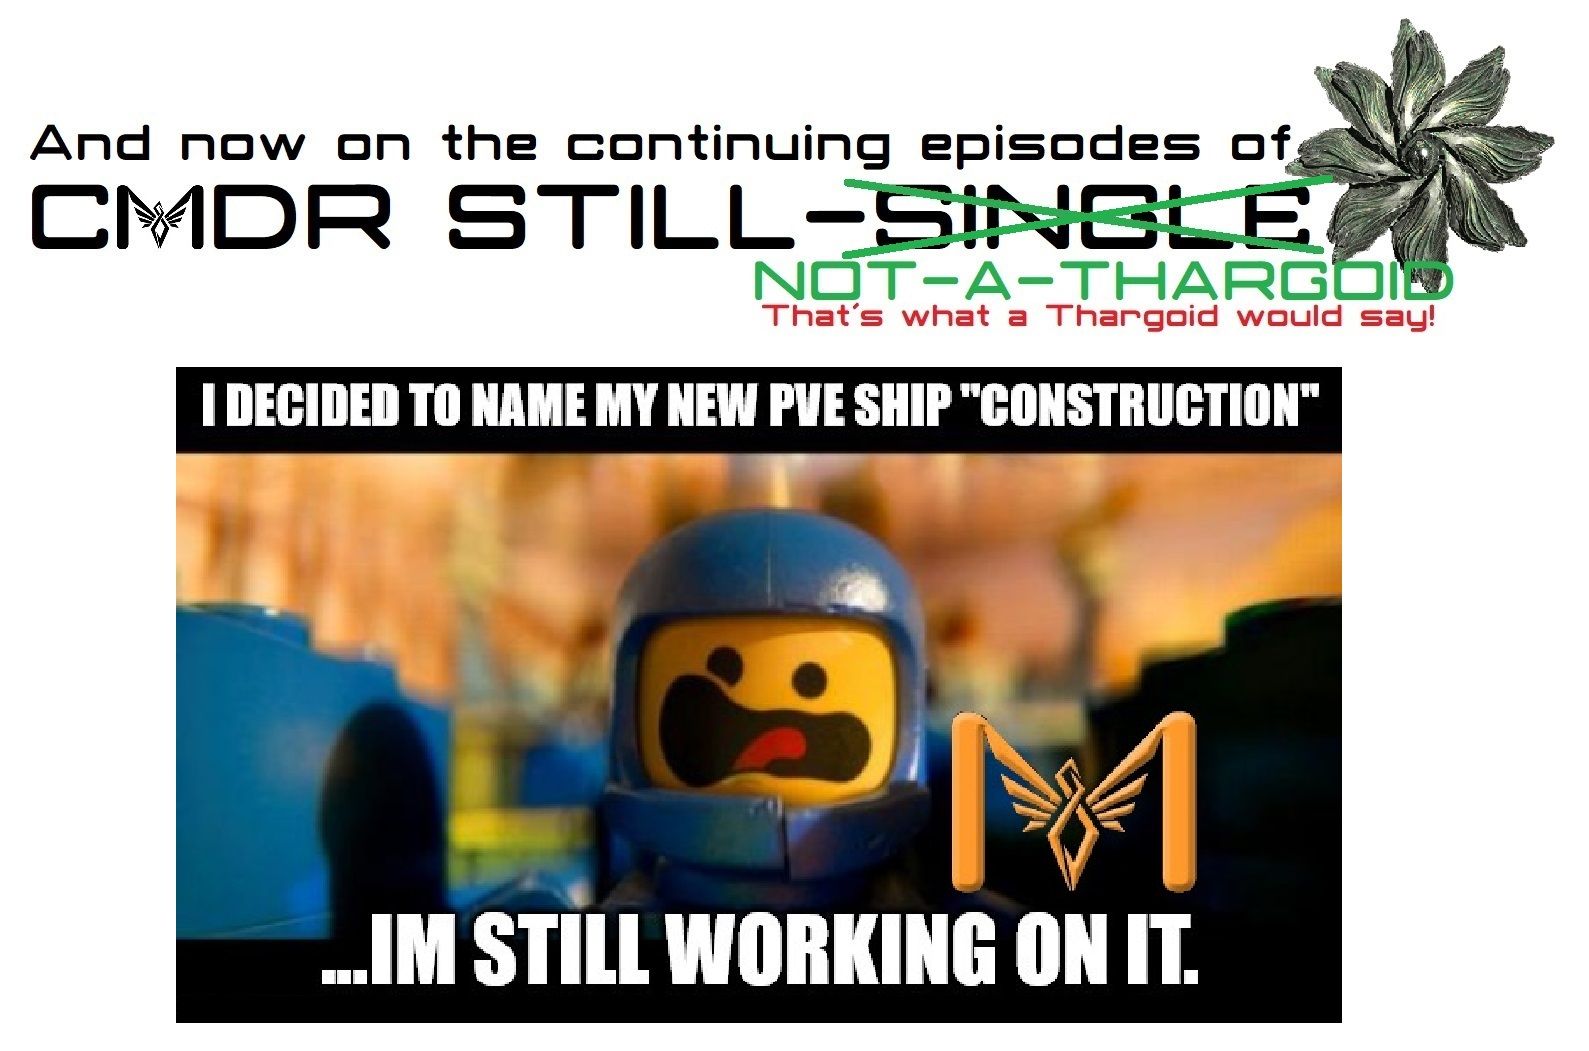 still single - construction.jpg